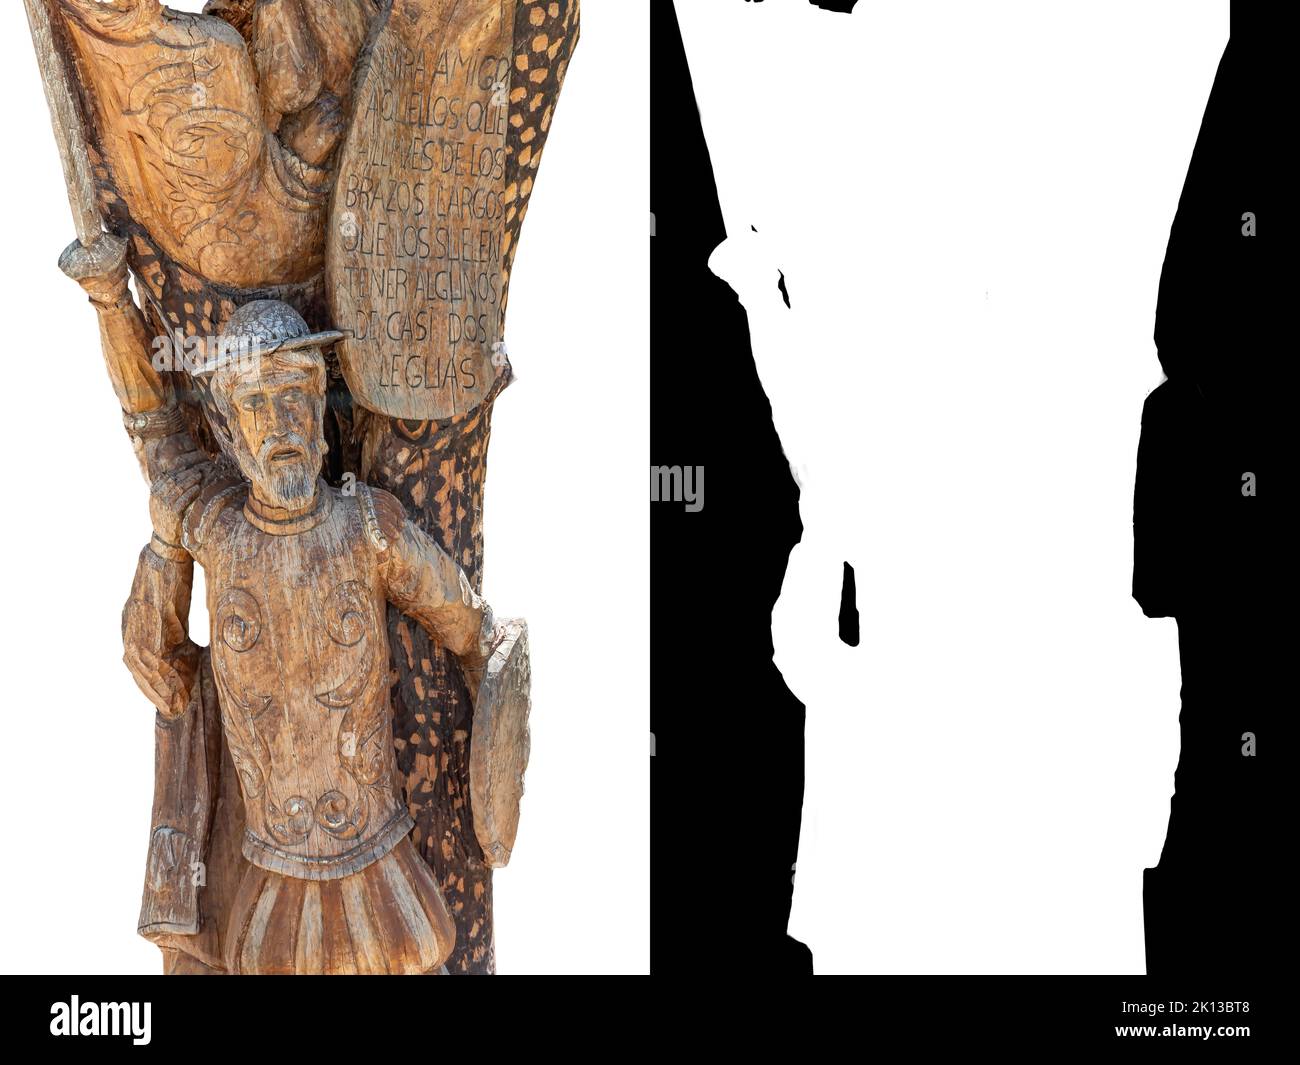 Particolare della statua di Don Chisciotte scolpita nel tronco di un albero. Il testo fa parte del libro di Don Miguel de Cervantes, Don Chisciotte de la Mancha Foto Stock